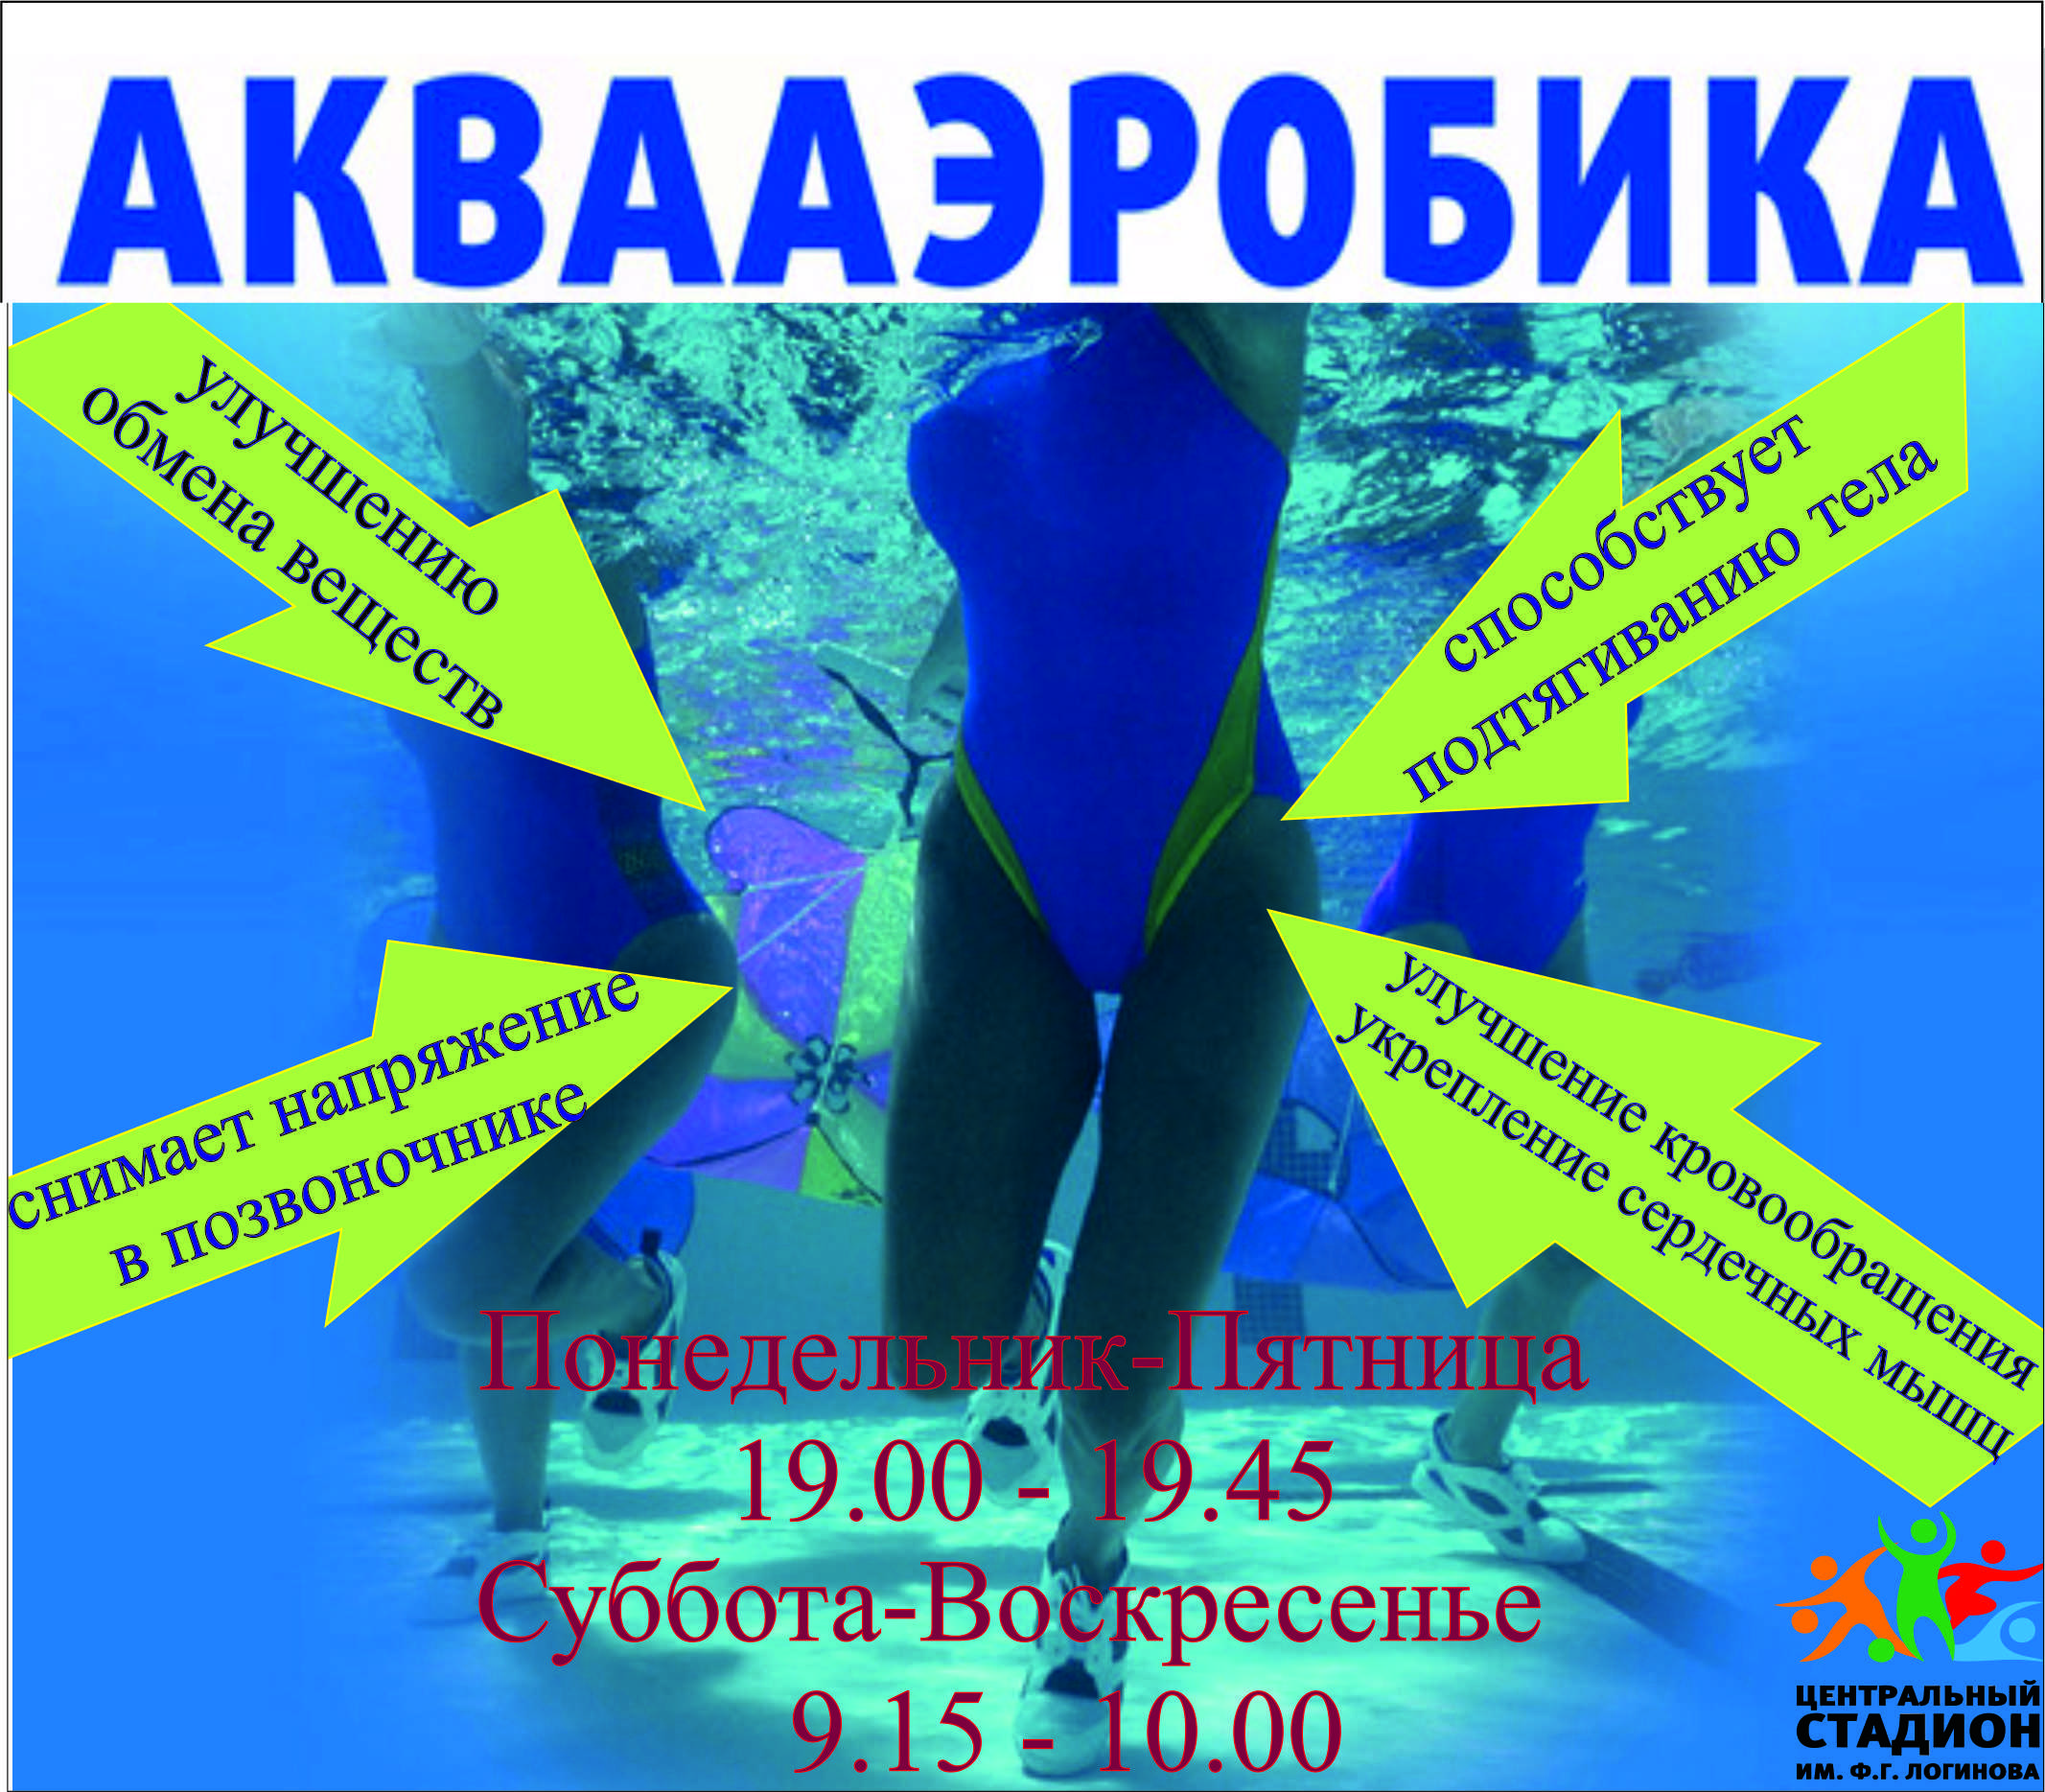 Аквааэробика для похудения: упражнения, помогает ли, чем полезна, что лучше для похудения - аквааэробика или фитнес / mama66.ru